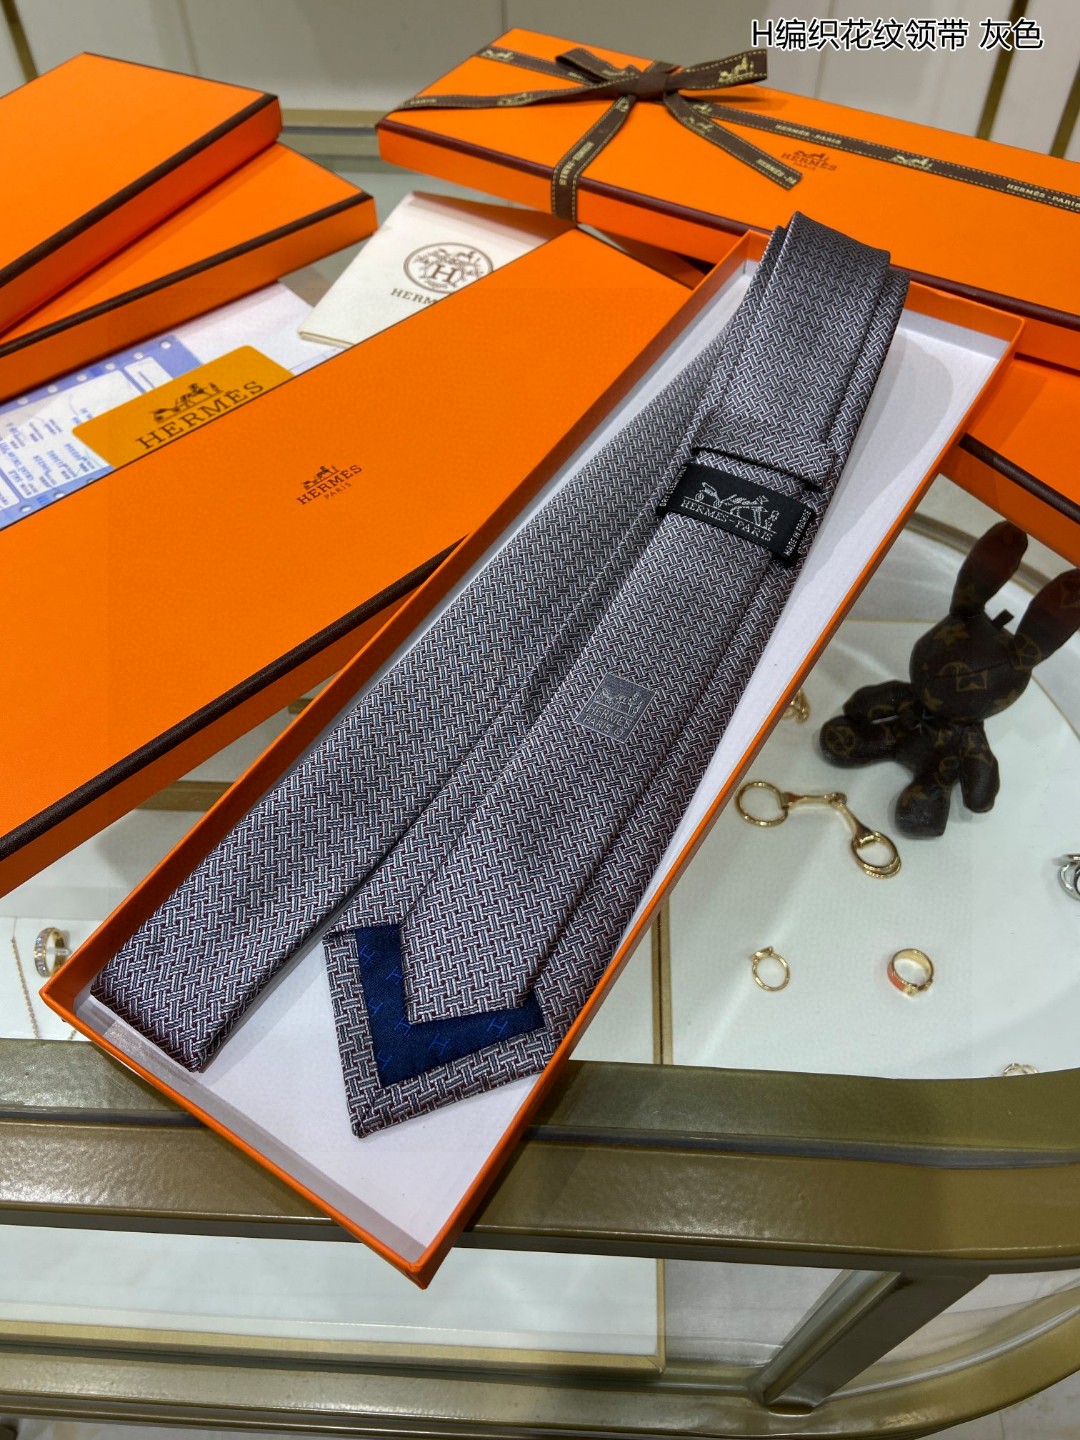 特价男士新款领带系列H编织花纹领带稀有H家每年都有一千条不同印花的领带面世从最初的多以几何图案表现骑术活